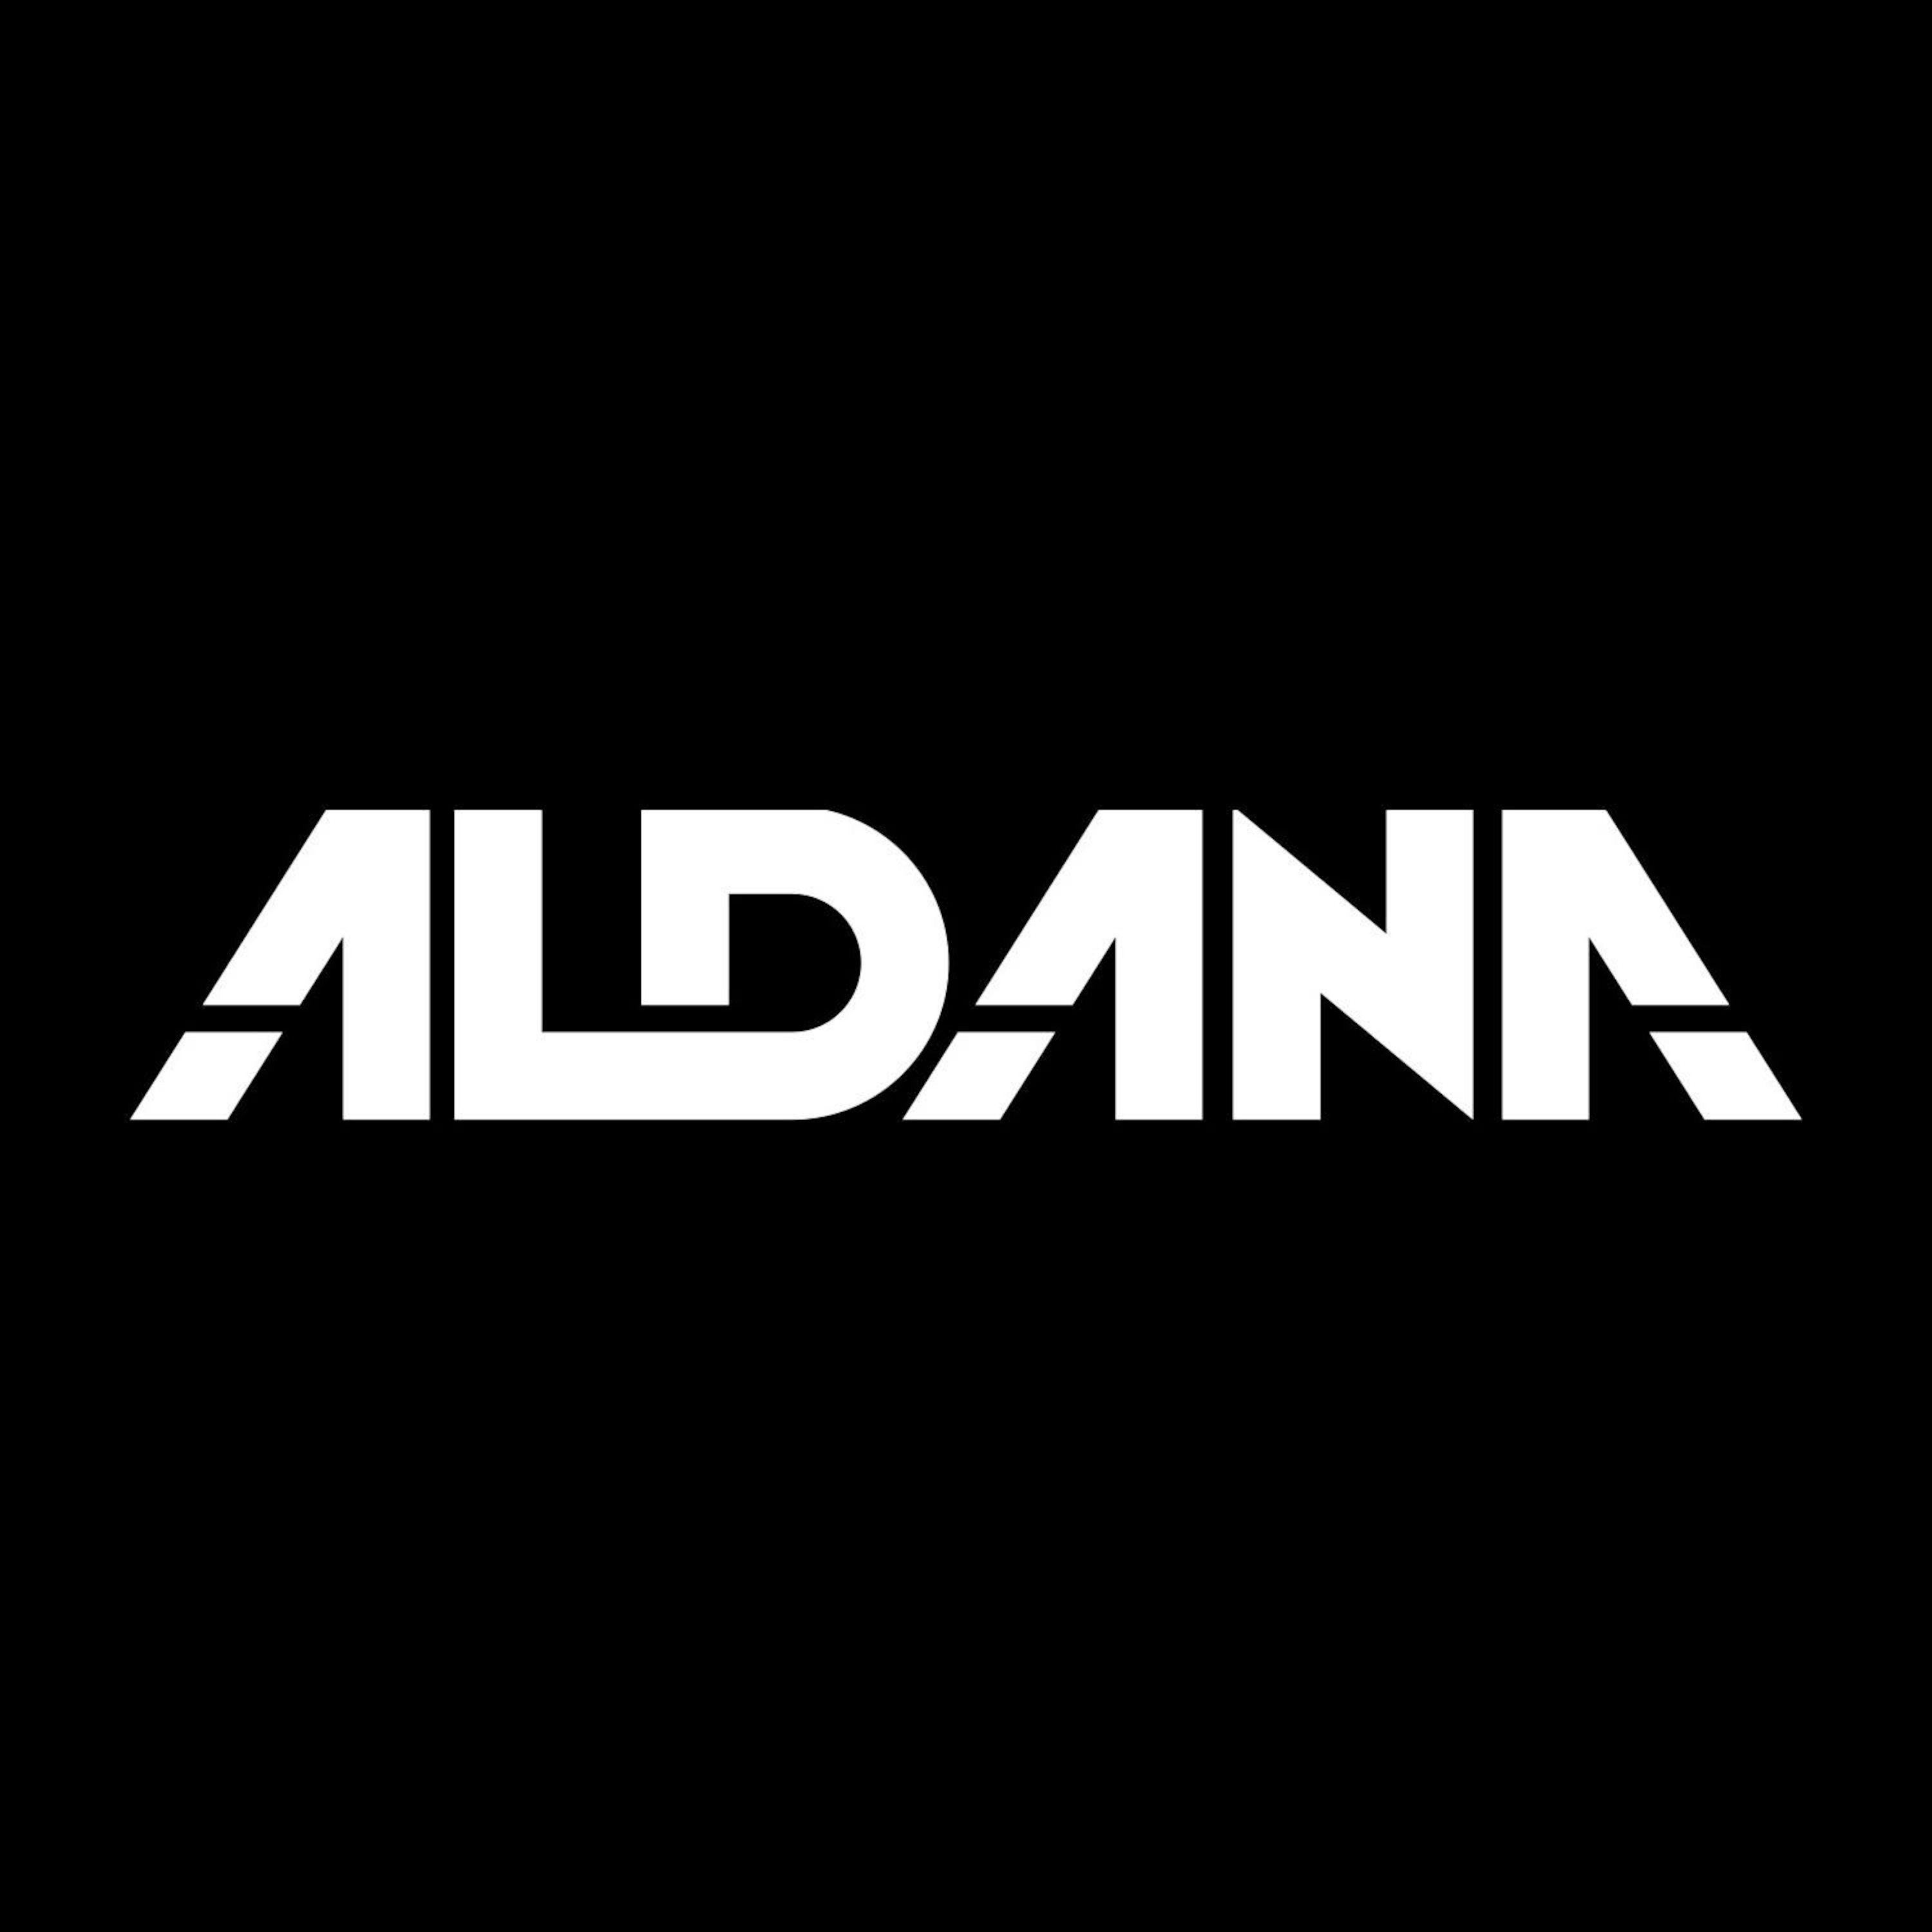 ALDANA PODCAST by Dj Aldana